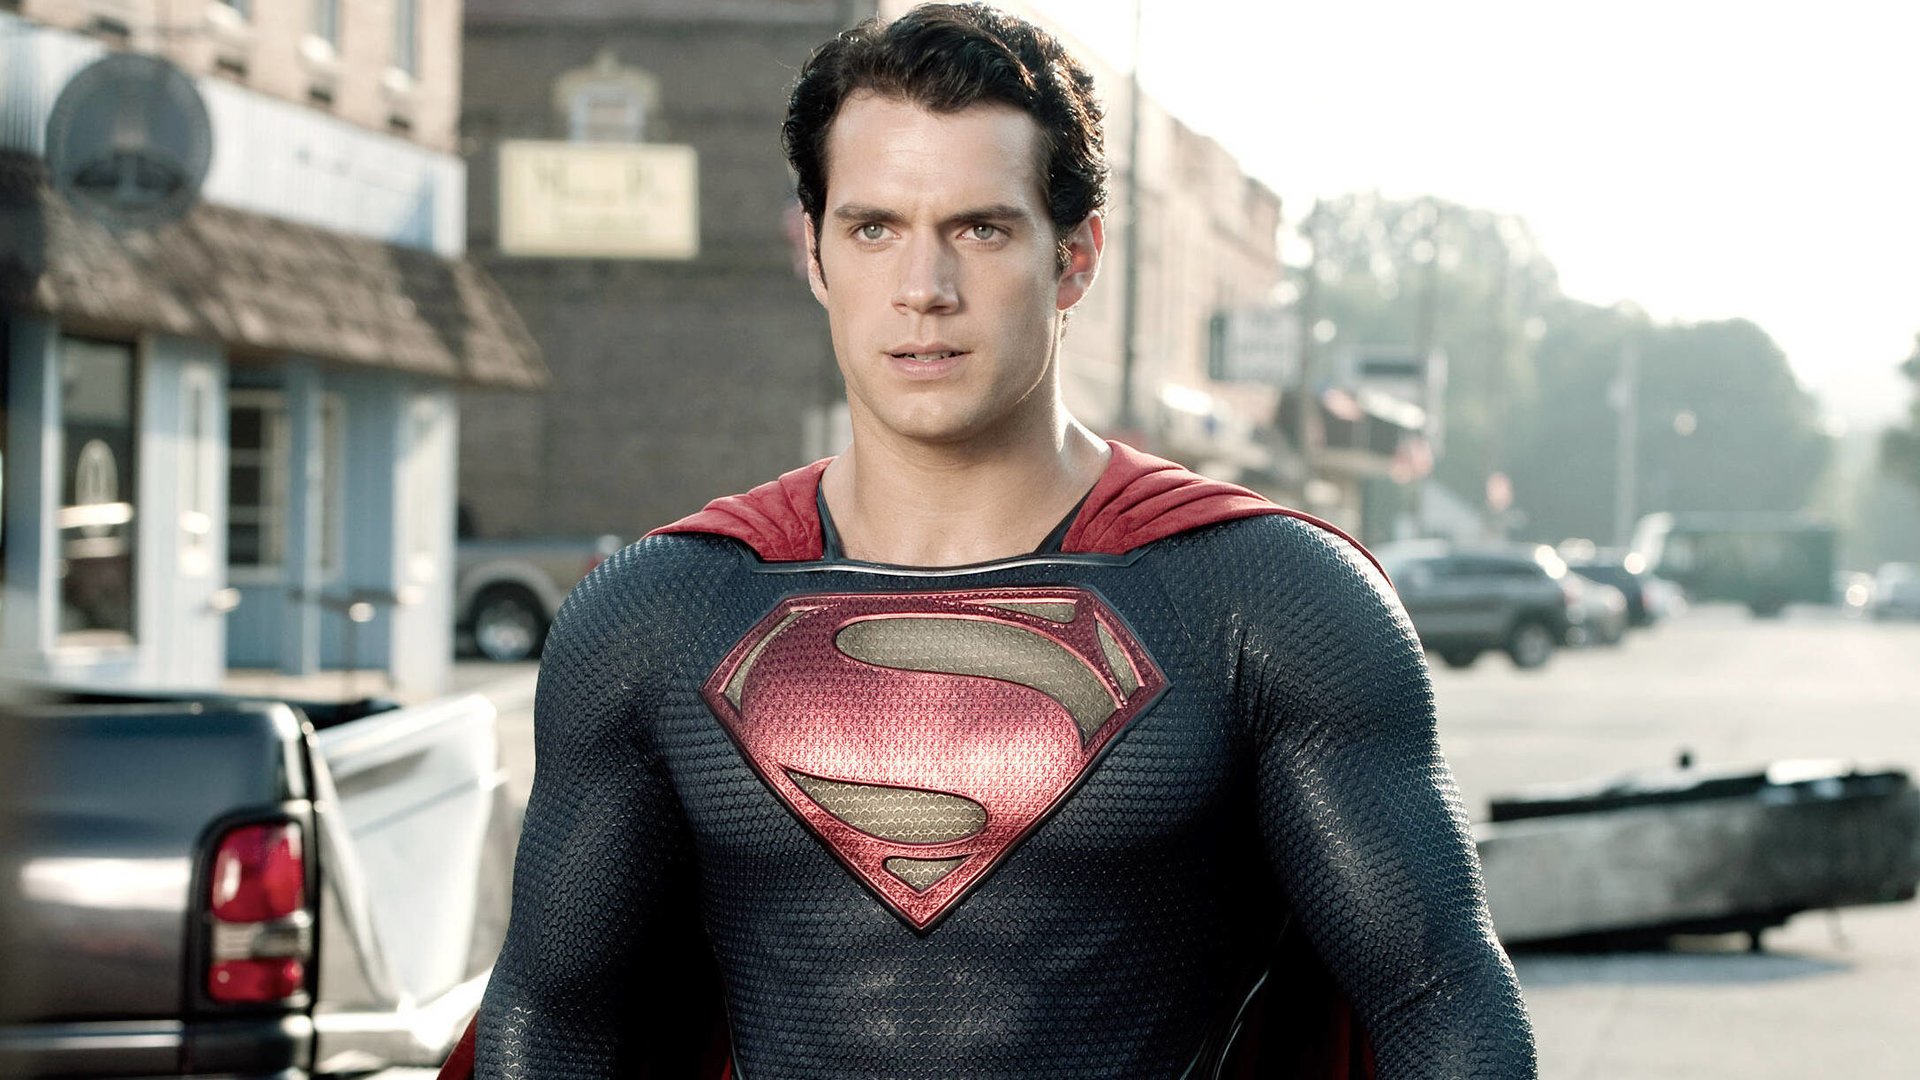 #Kein Rauswurf: DC-Studios-Chef enthüllt Wahrheit über Super-Man-Chaos um Henry Cavill